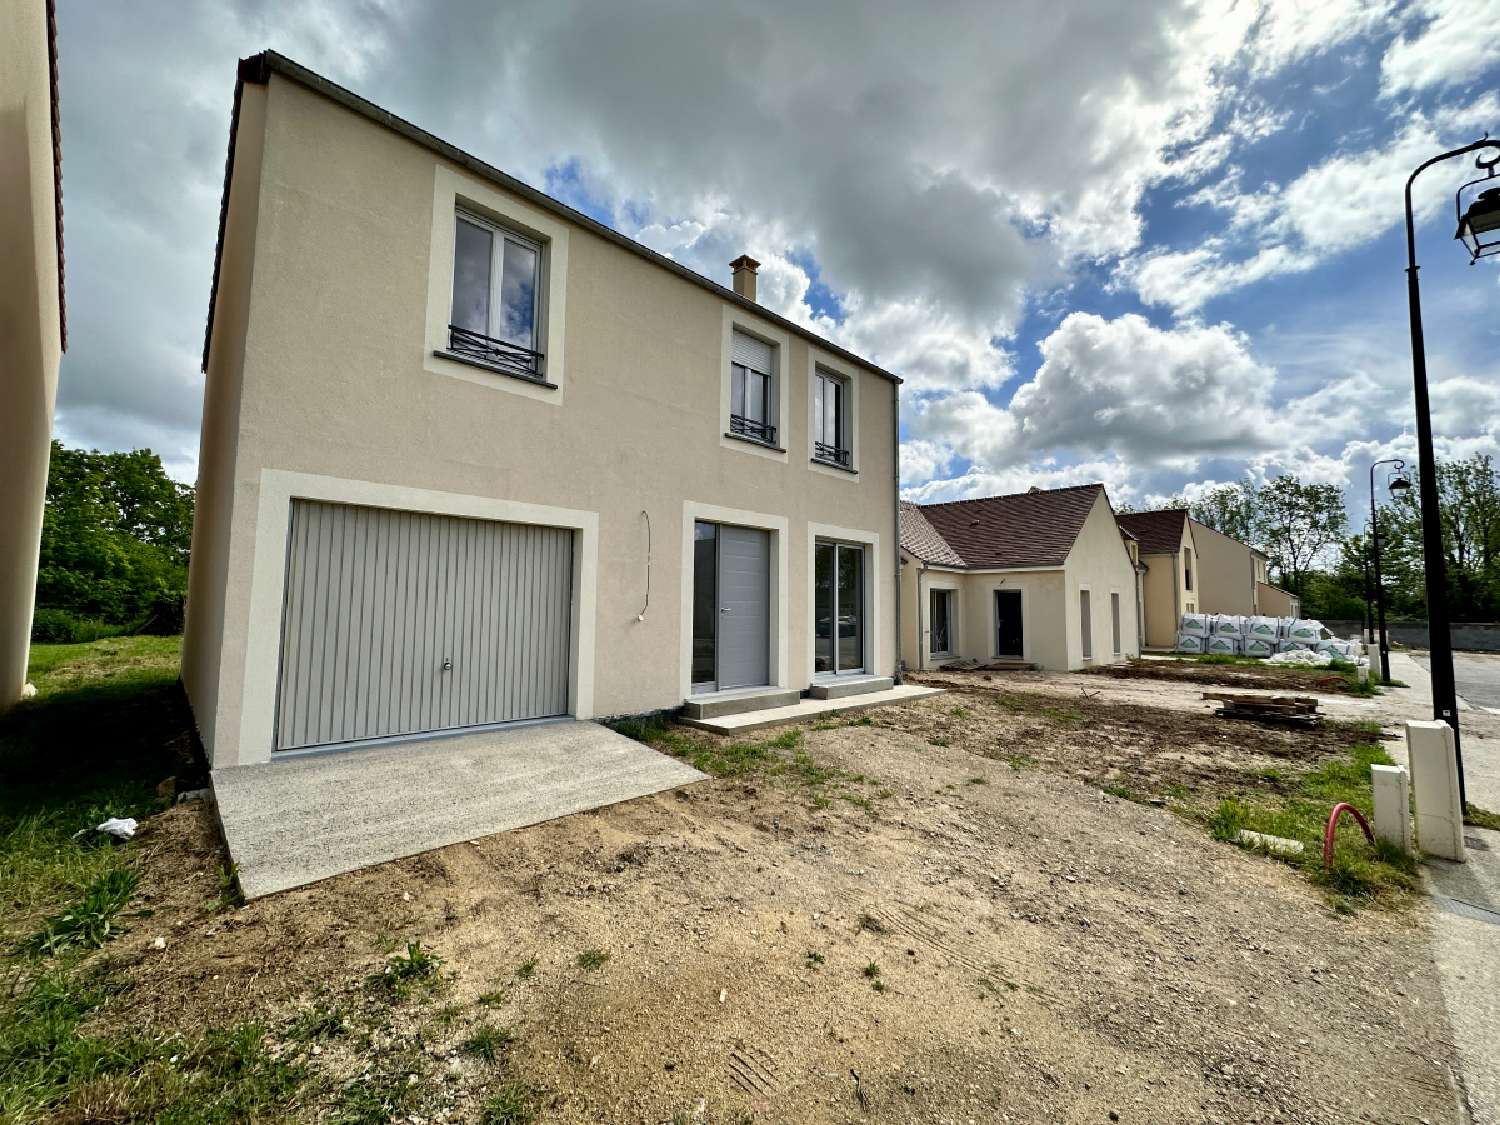  à vendre maison Grez-sur-Loing Seine-et-Marne 2